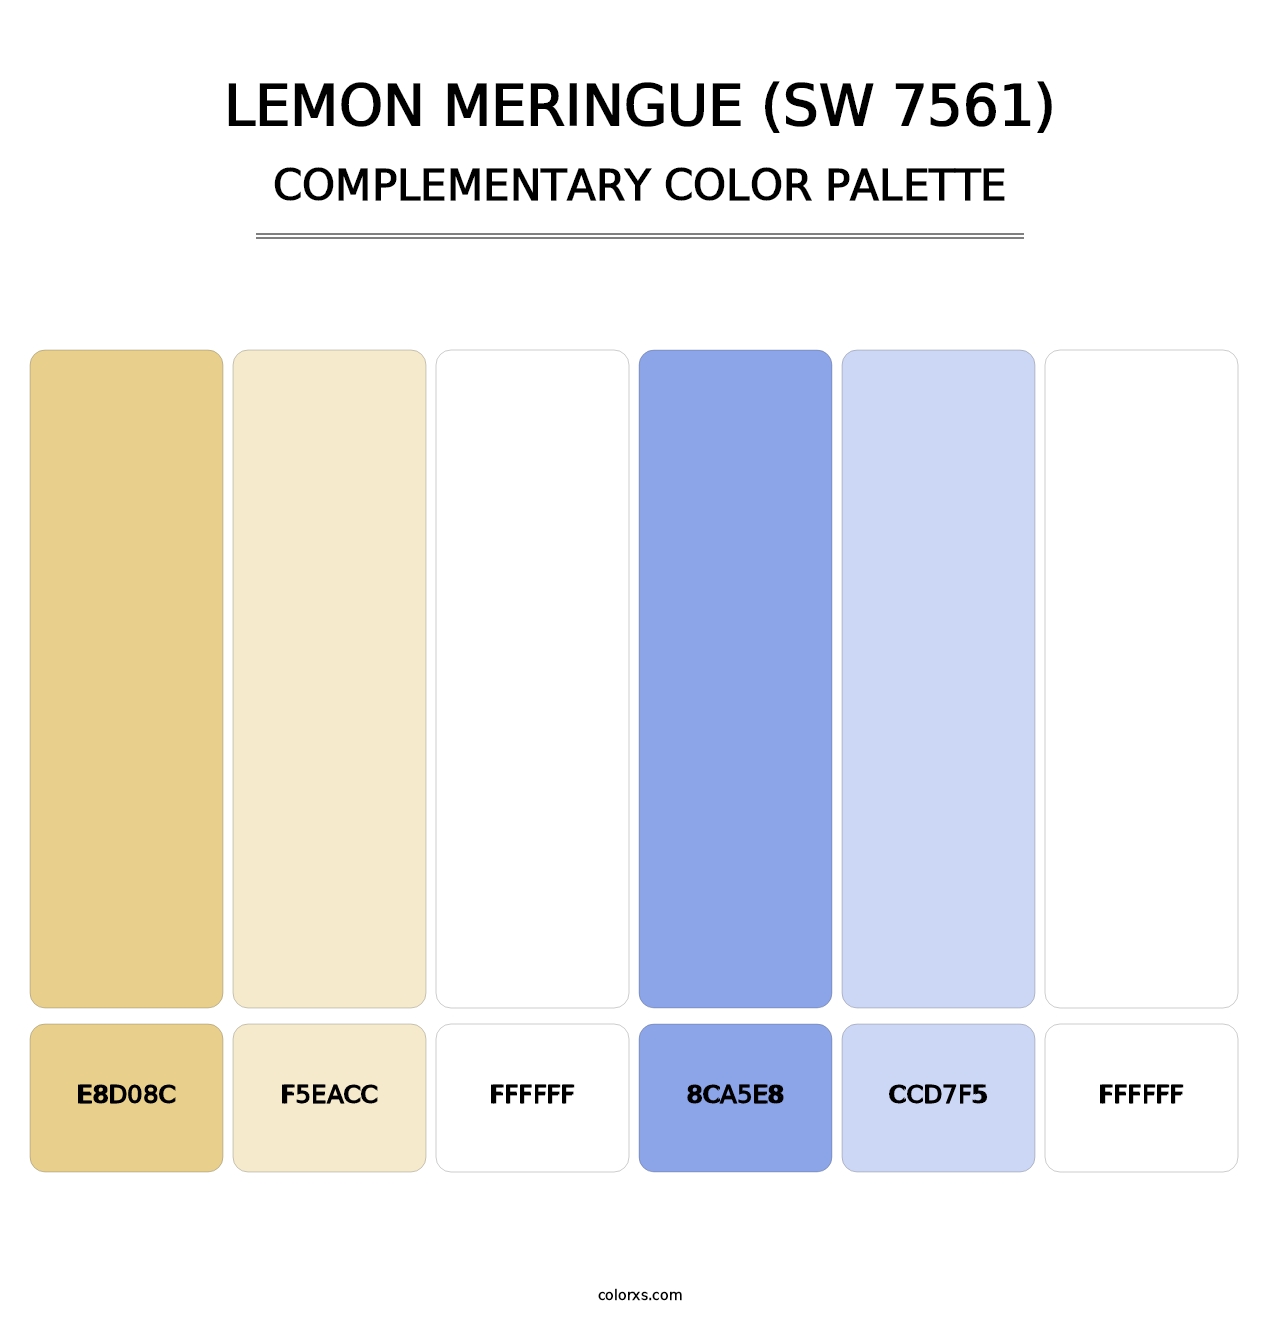 Lemon Meringue (SW 7561) - Complementary Color Palette